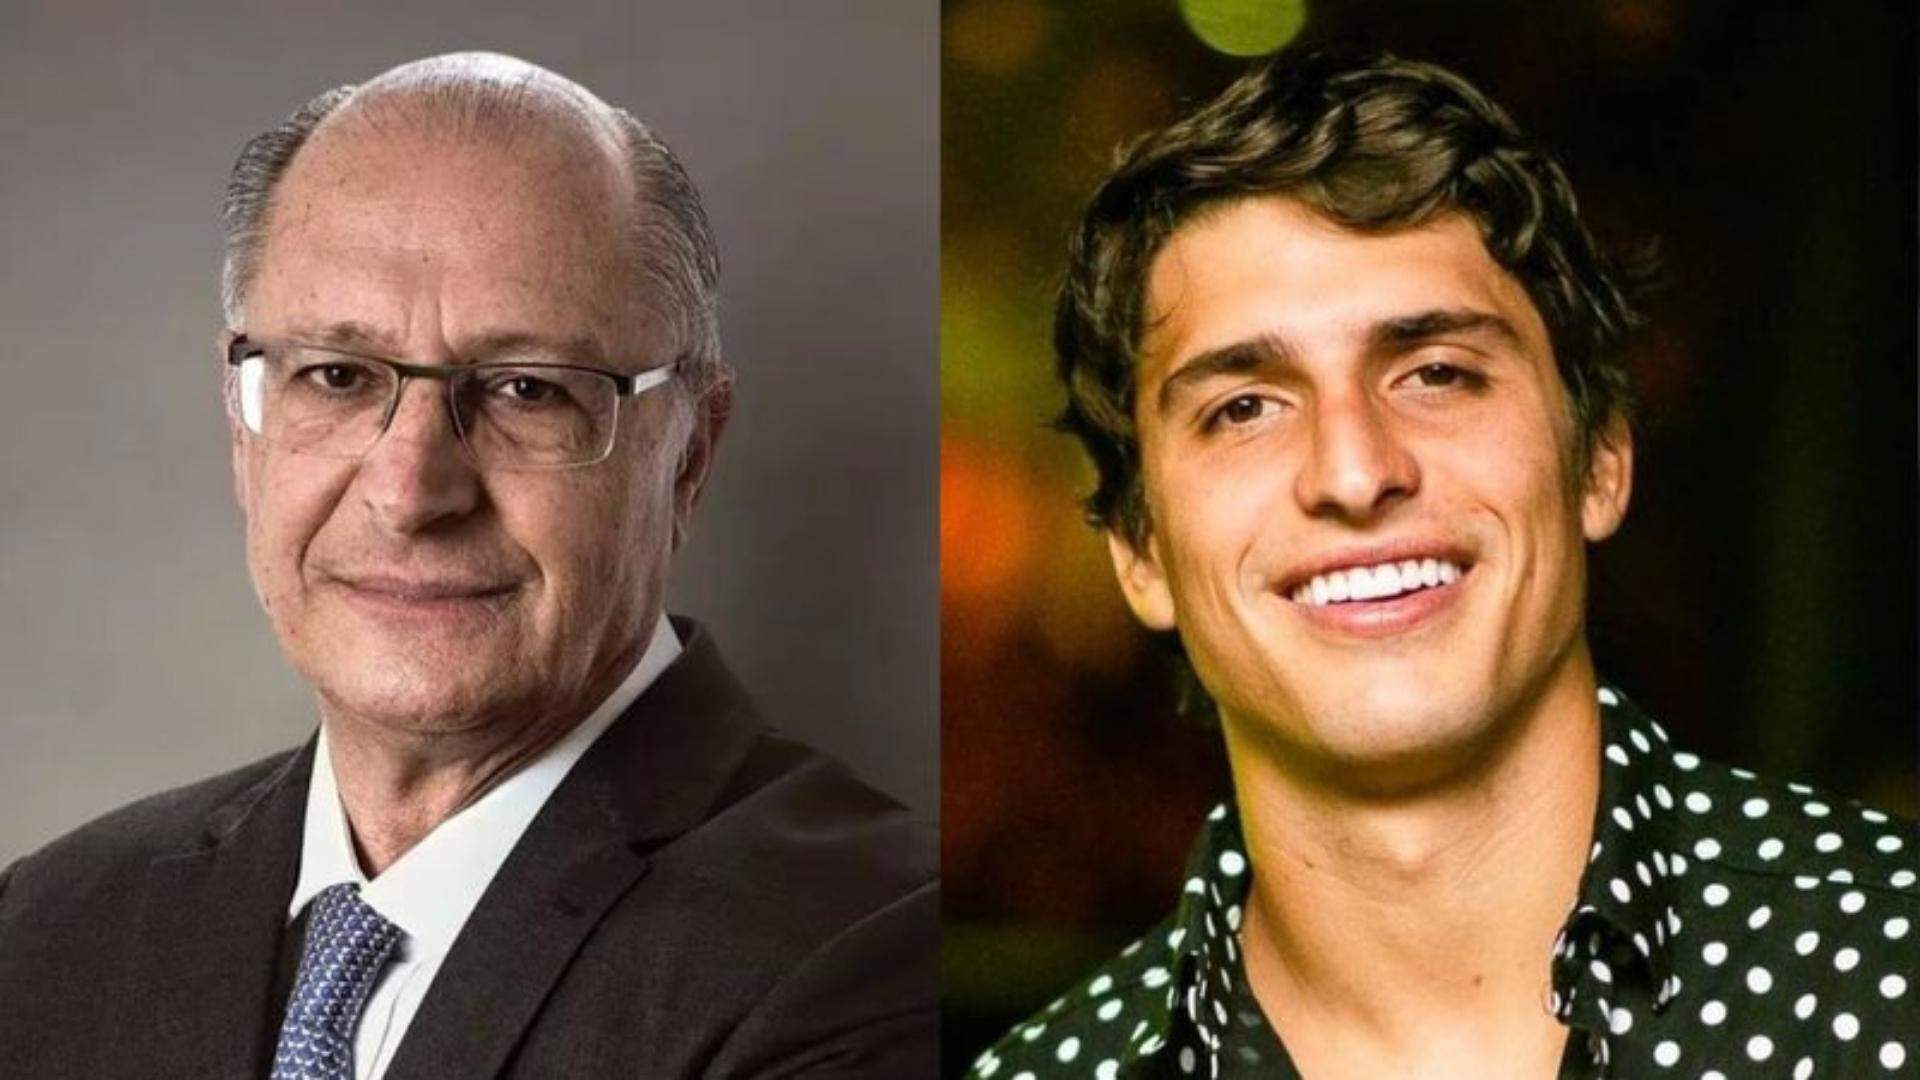 Parentes? Fotos antigas de Geraldo Alckmin são comparadas com aparência de Felipe Prior